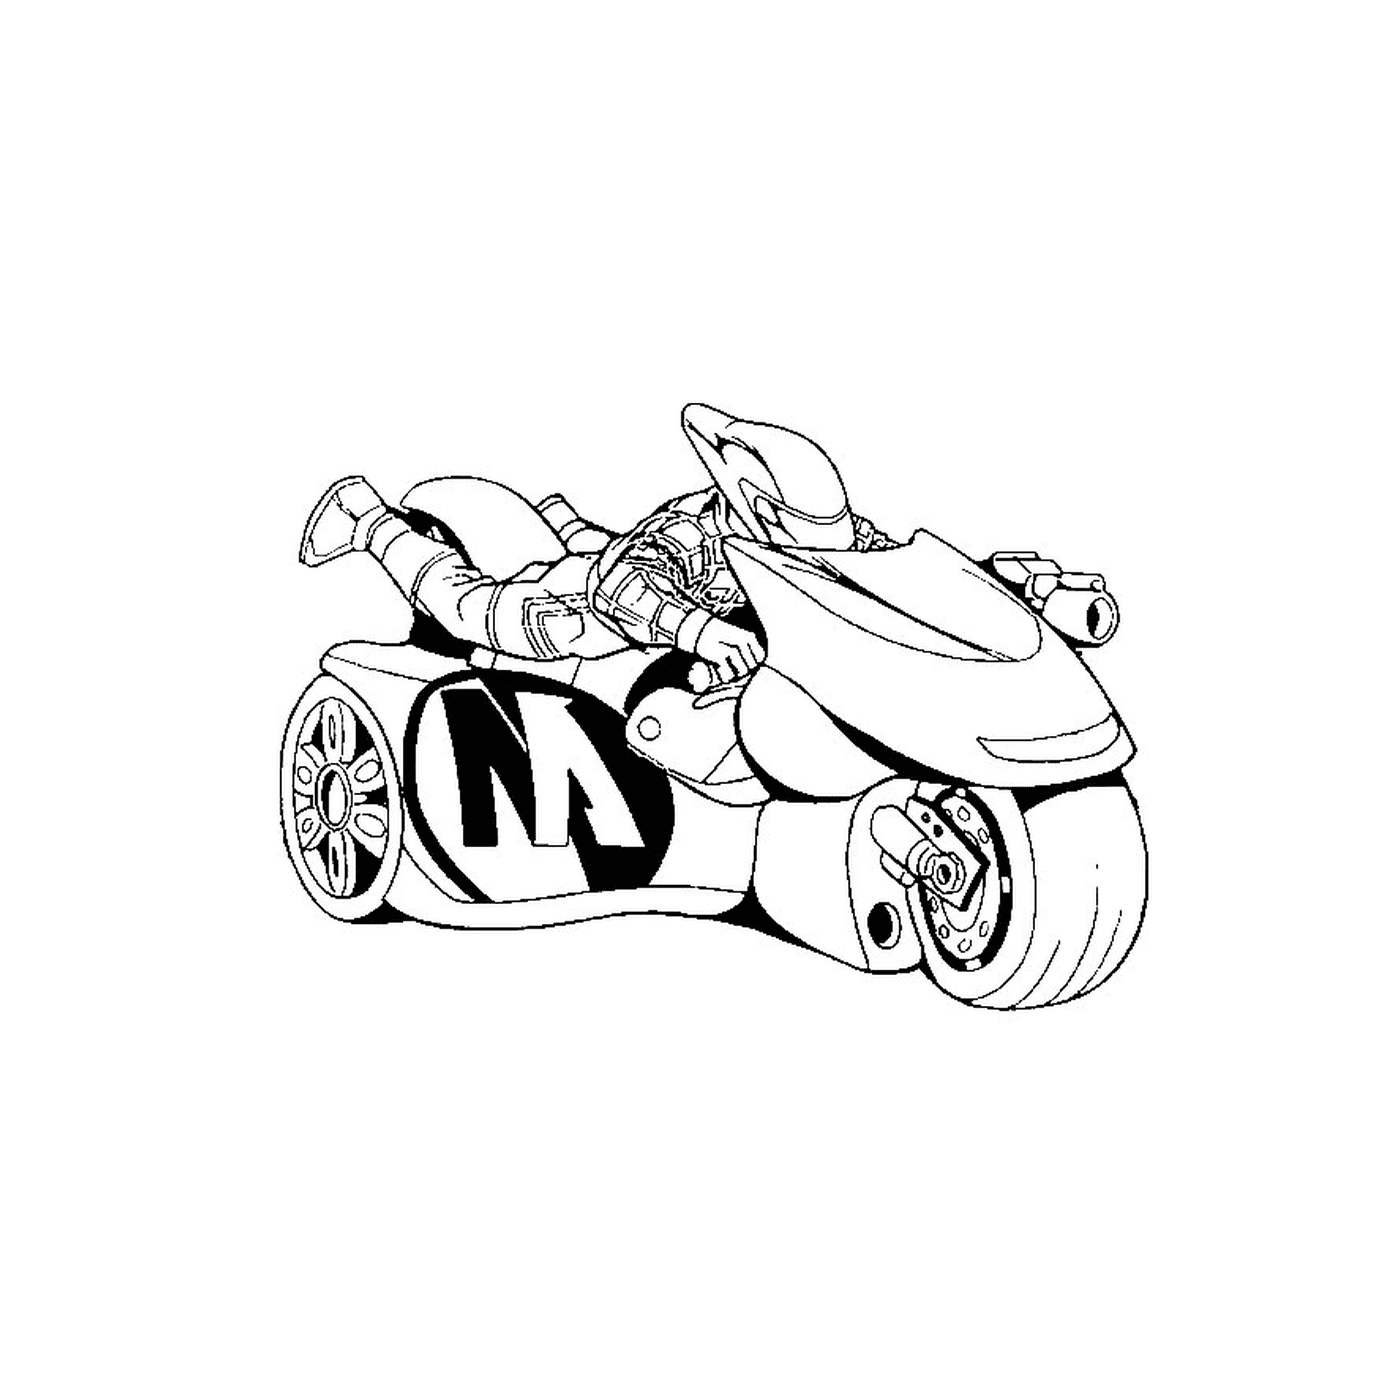  Una motocicletta Batman 